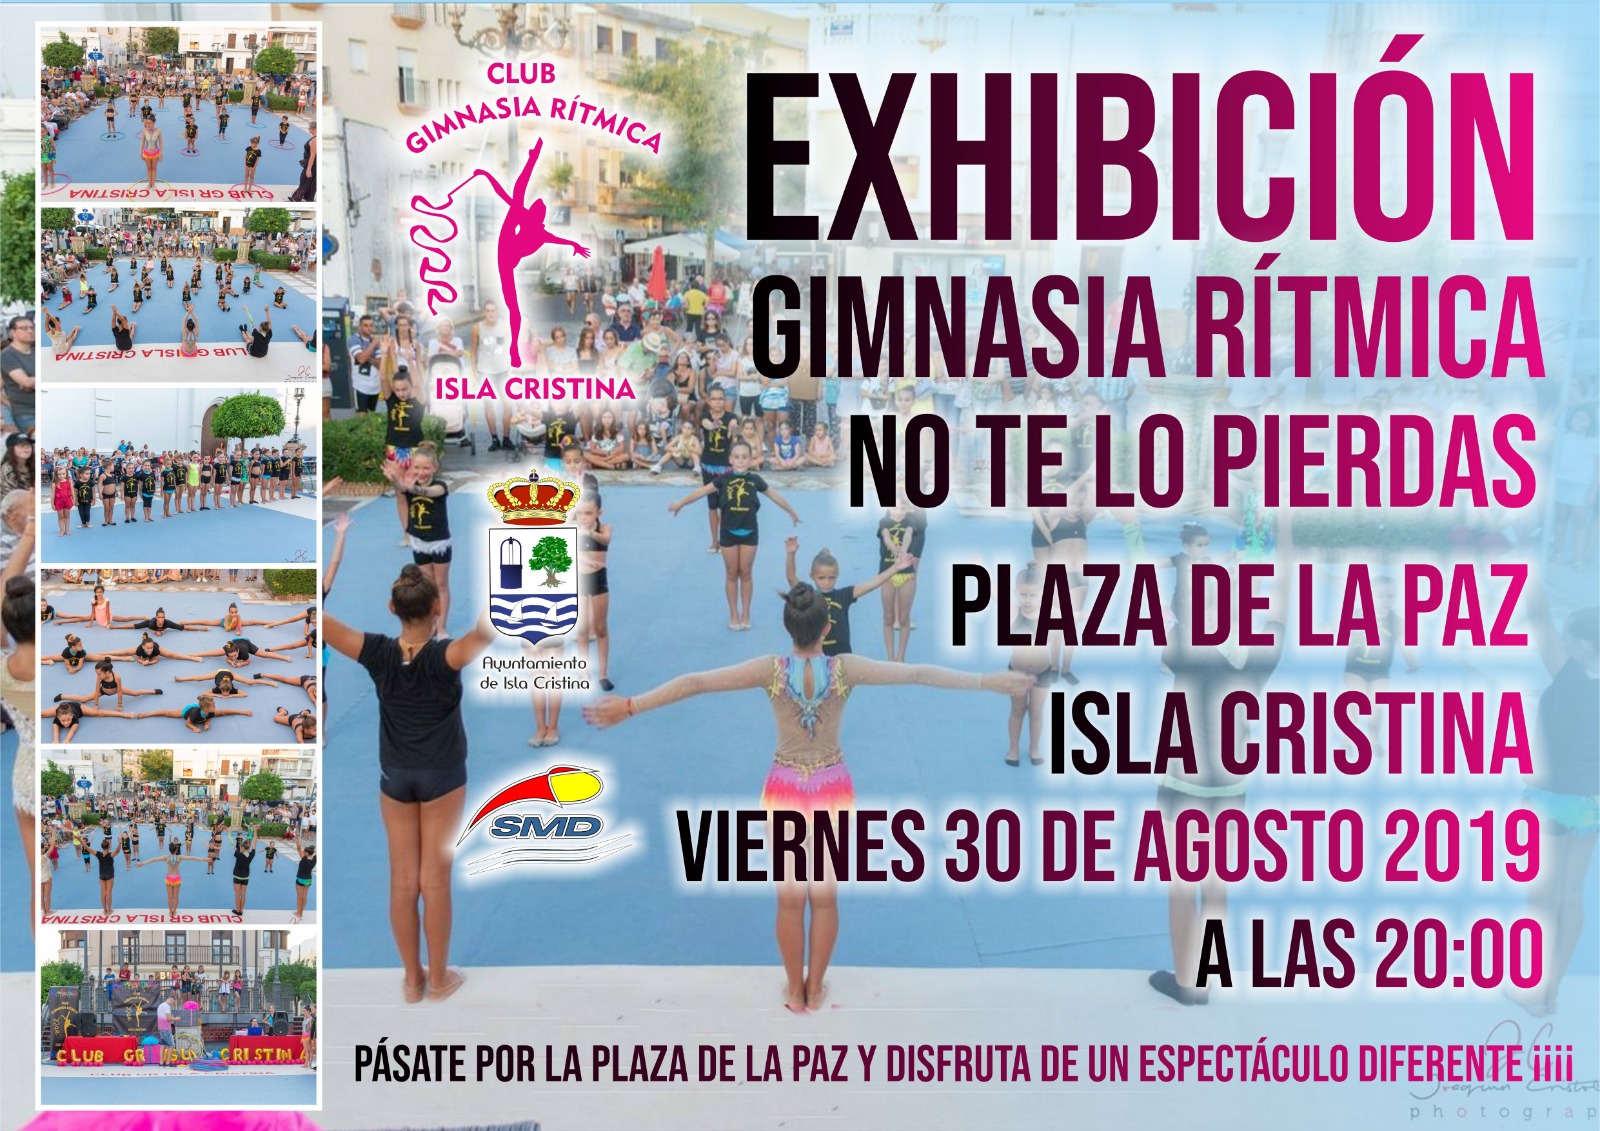 Exhibición de Gimnasia Rítmica en Plaza de la Paz de Isla Cristina